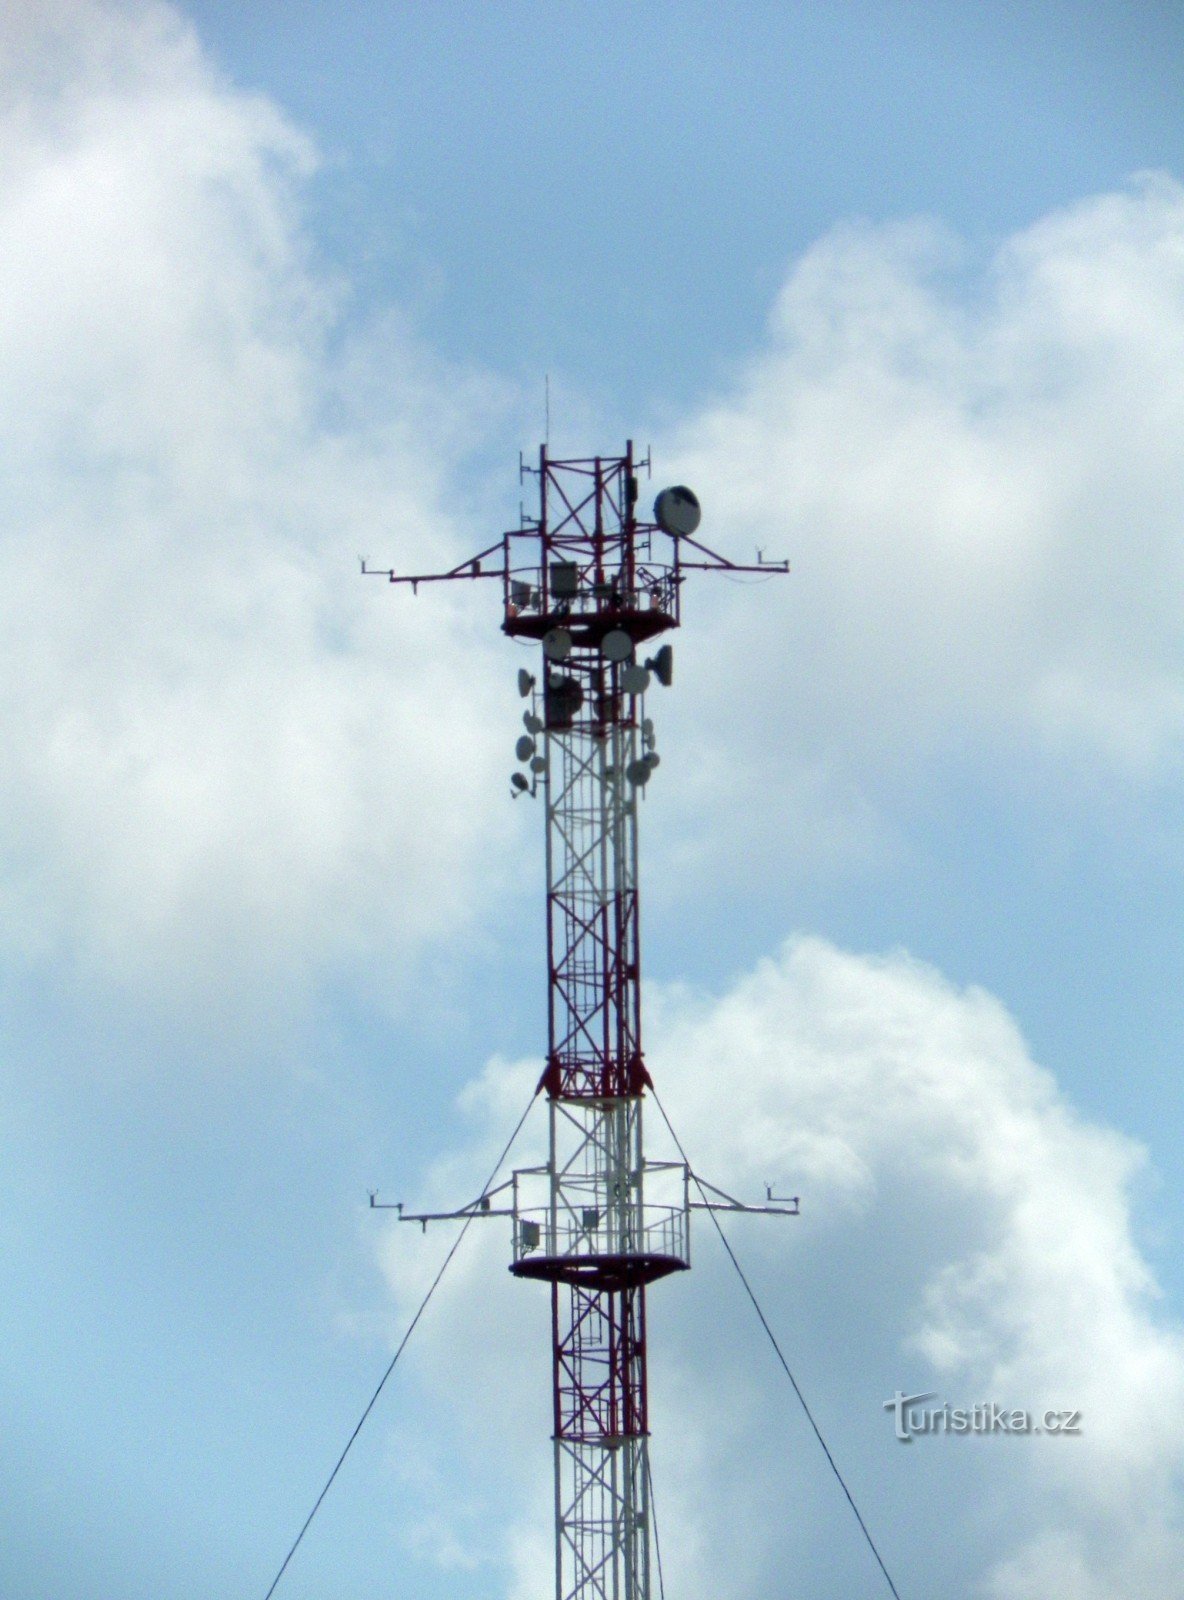 Detalle de la parte superior del mástil con cámara web, medidores meteorológicos y antenas de telecomunicaciones